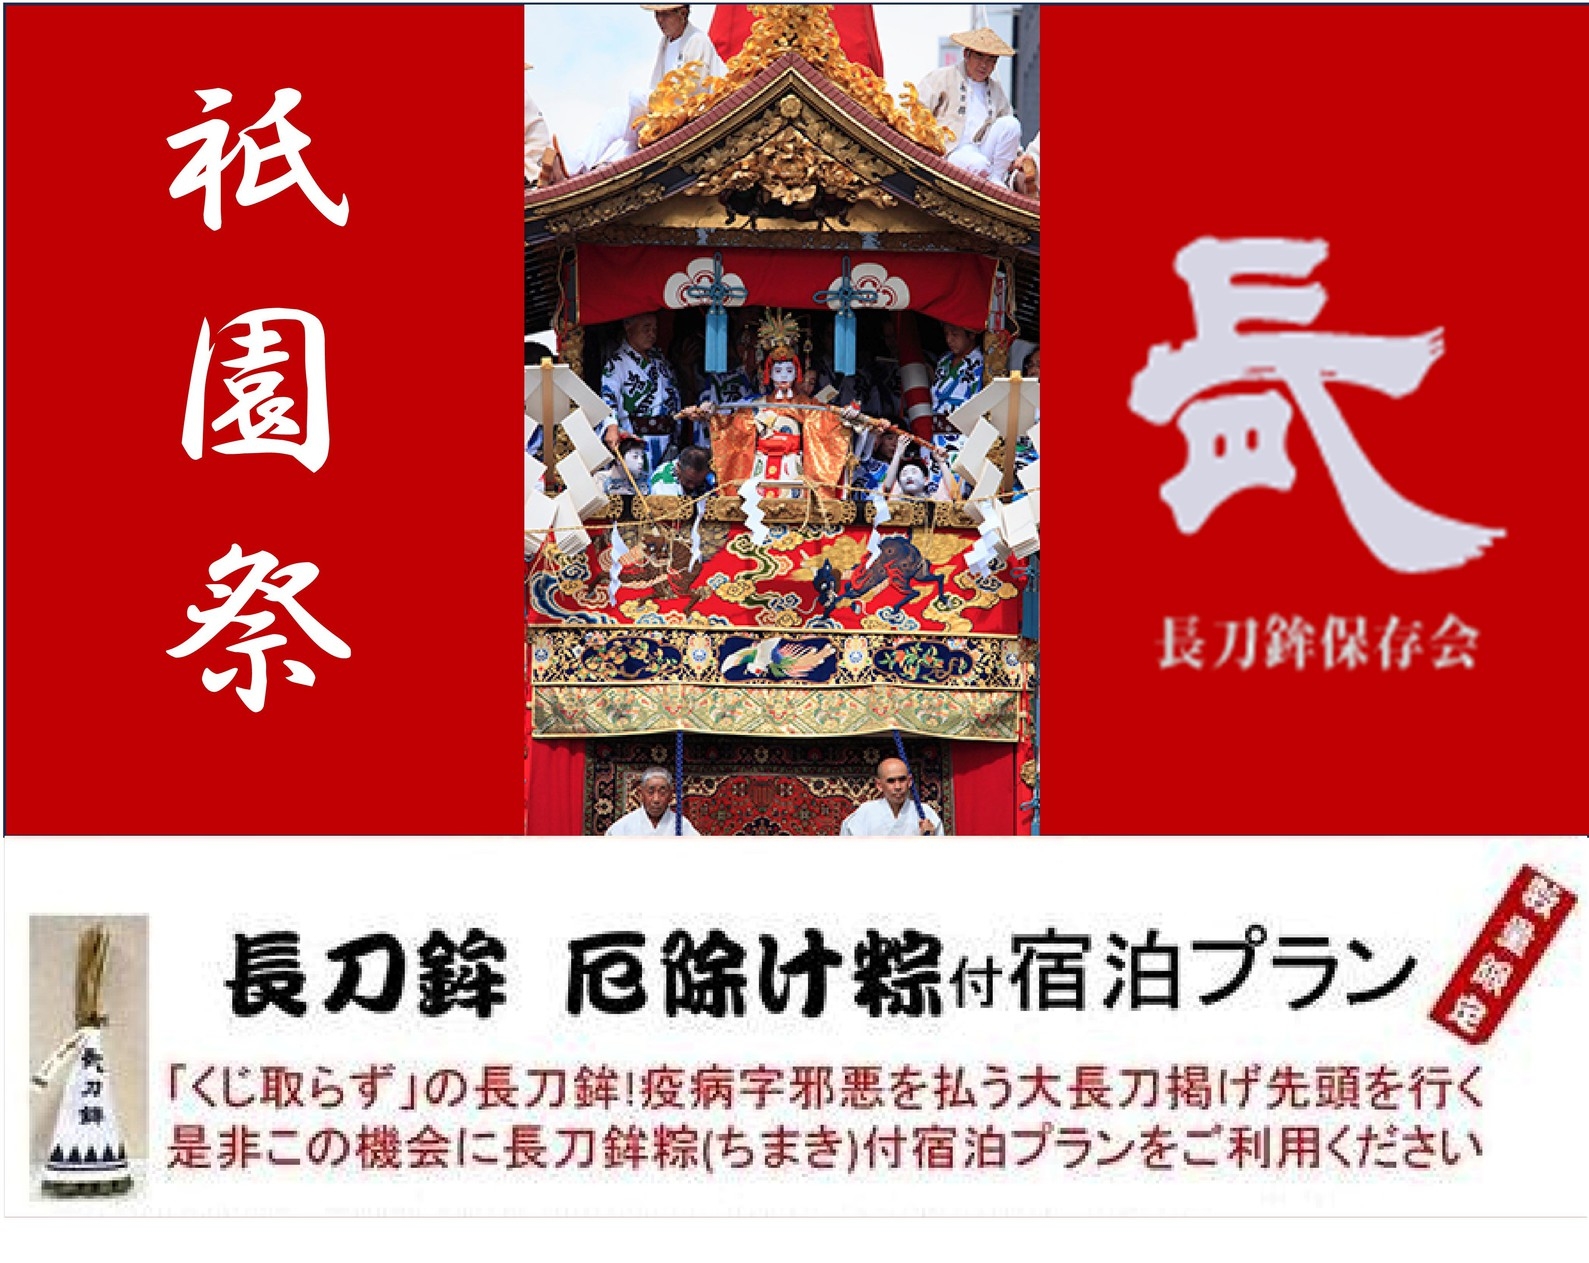 ◆先着10名様限定◆祇園祭【長刀鉾】厄除けちまき付き宿泊プラン